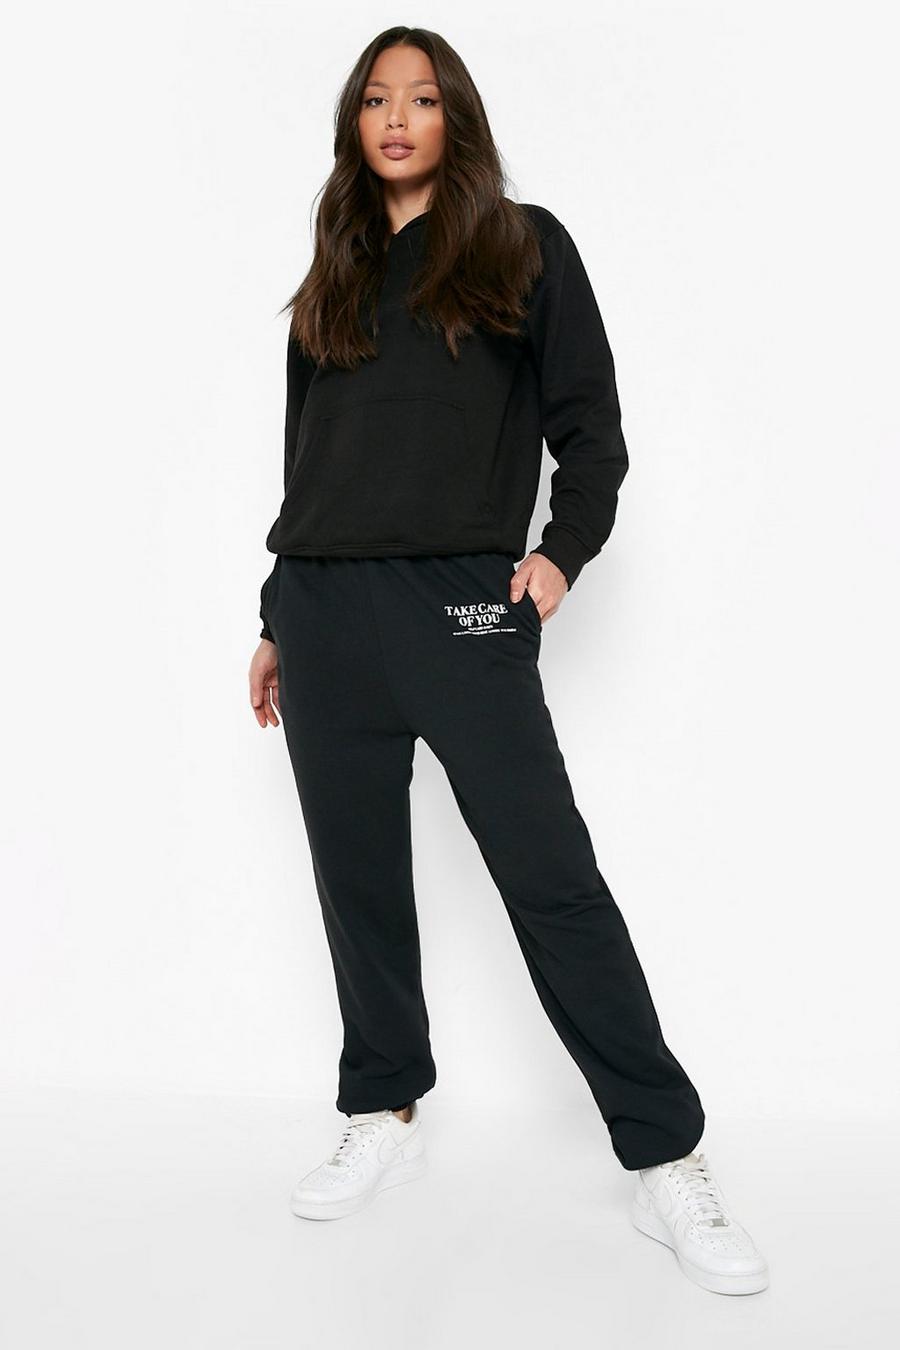 שחור מכנסי ריצה מבד ממוחזר עם הדפס לנשים גבוהות image number 1